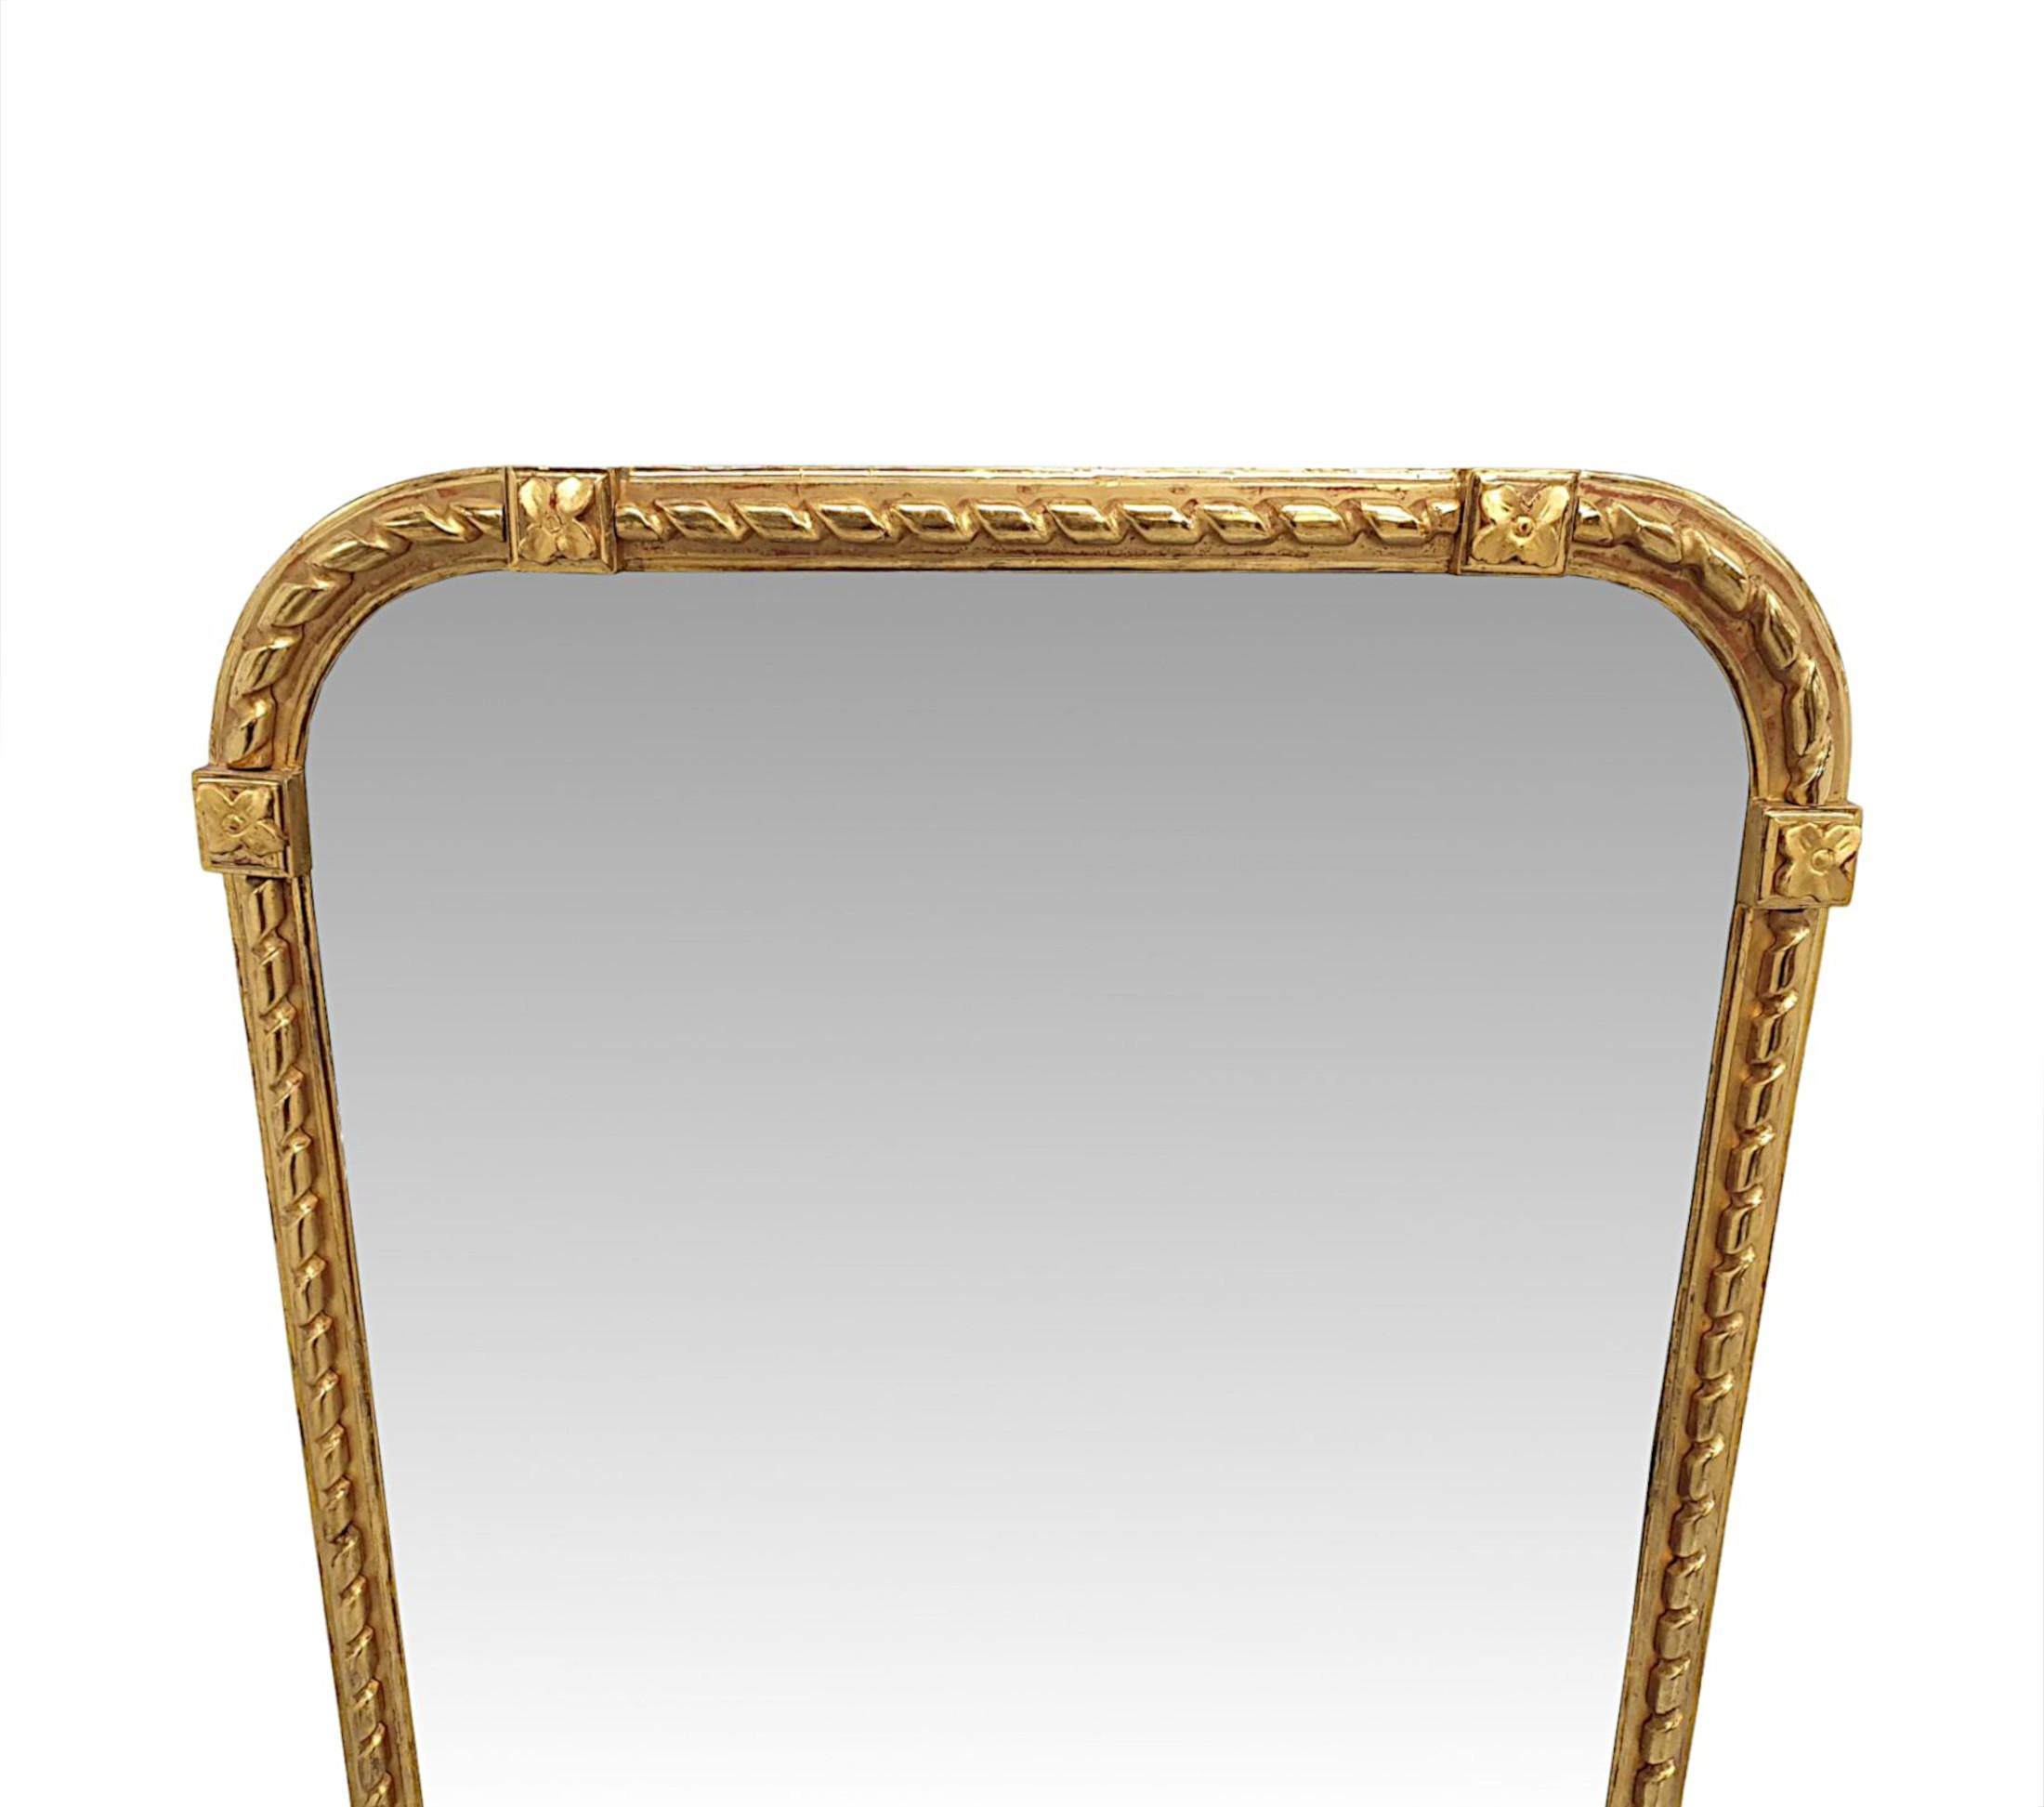 Un fabuleux miroir de manteau du 19e siècle, finement sculpté à la main et d'une qualité exceptionnelle.  La plaque de verre miroir de forme arquée est enchâssée dans un élégant cadre en bois doré mouluré et cannelé, orné d'un magnifique ruban